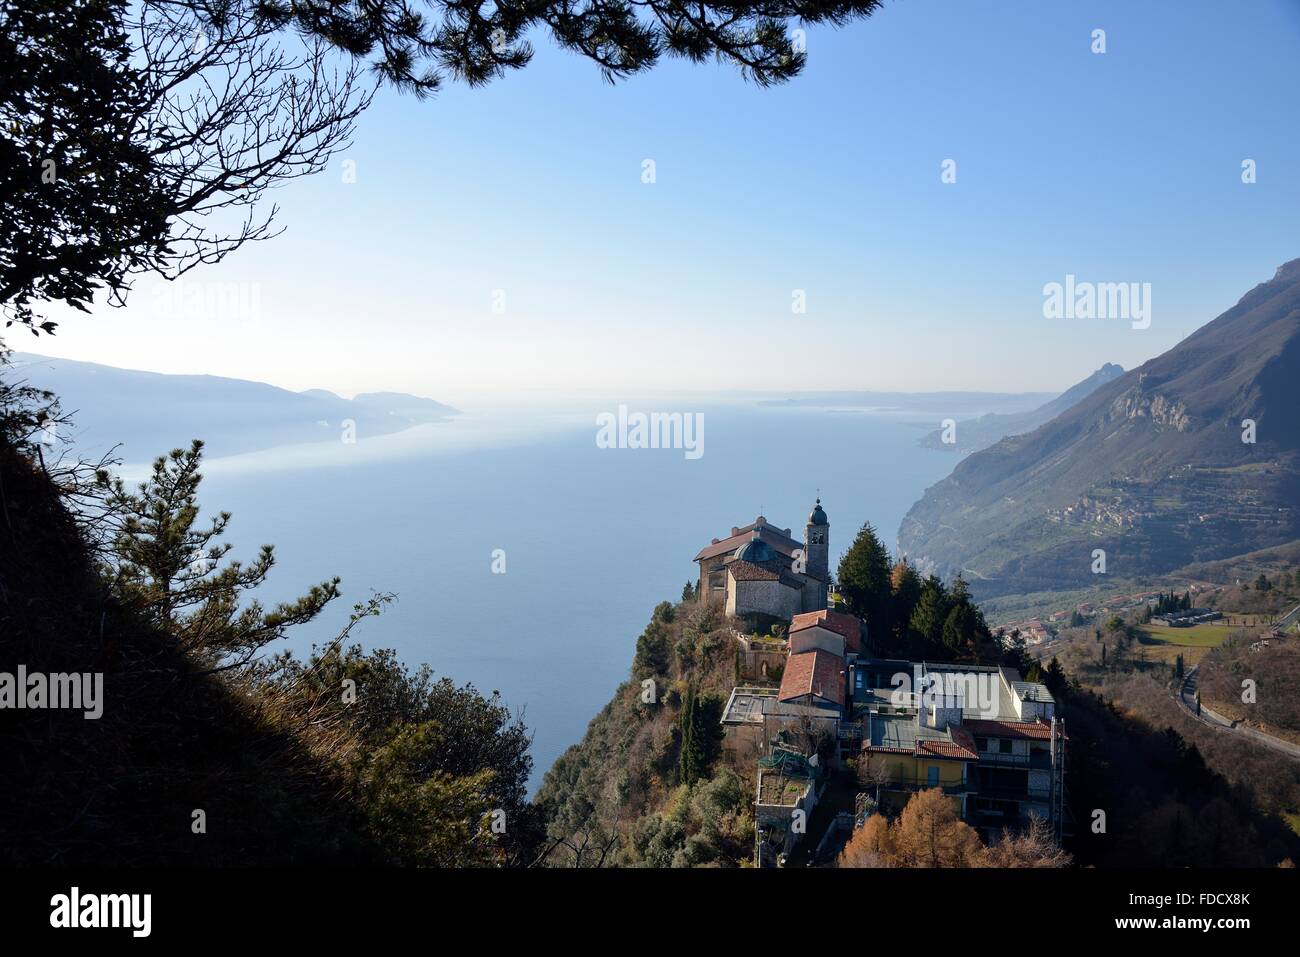 Santuario di Montecastello, Tignale, Lake Garda, Province of Brescia, Lombardy, Italy Stock Photo